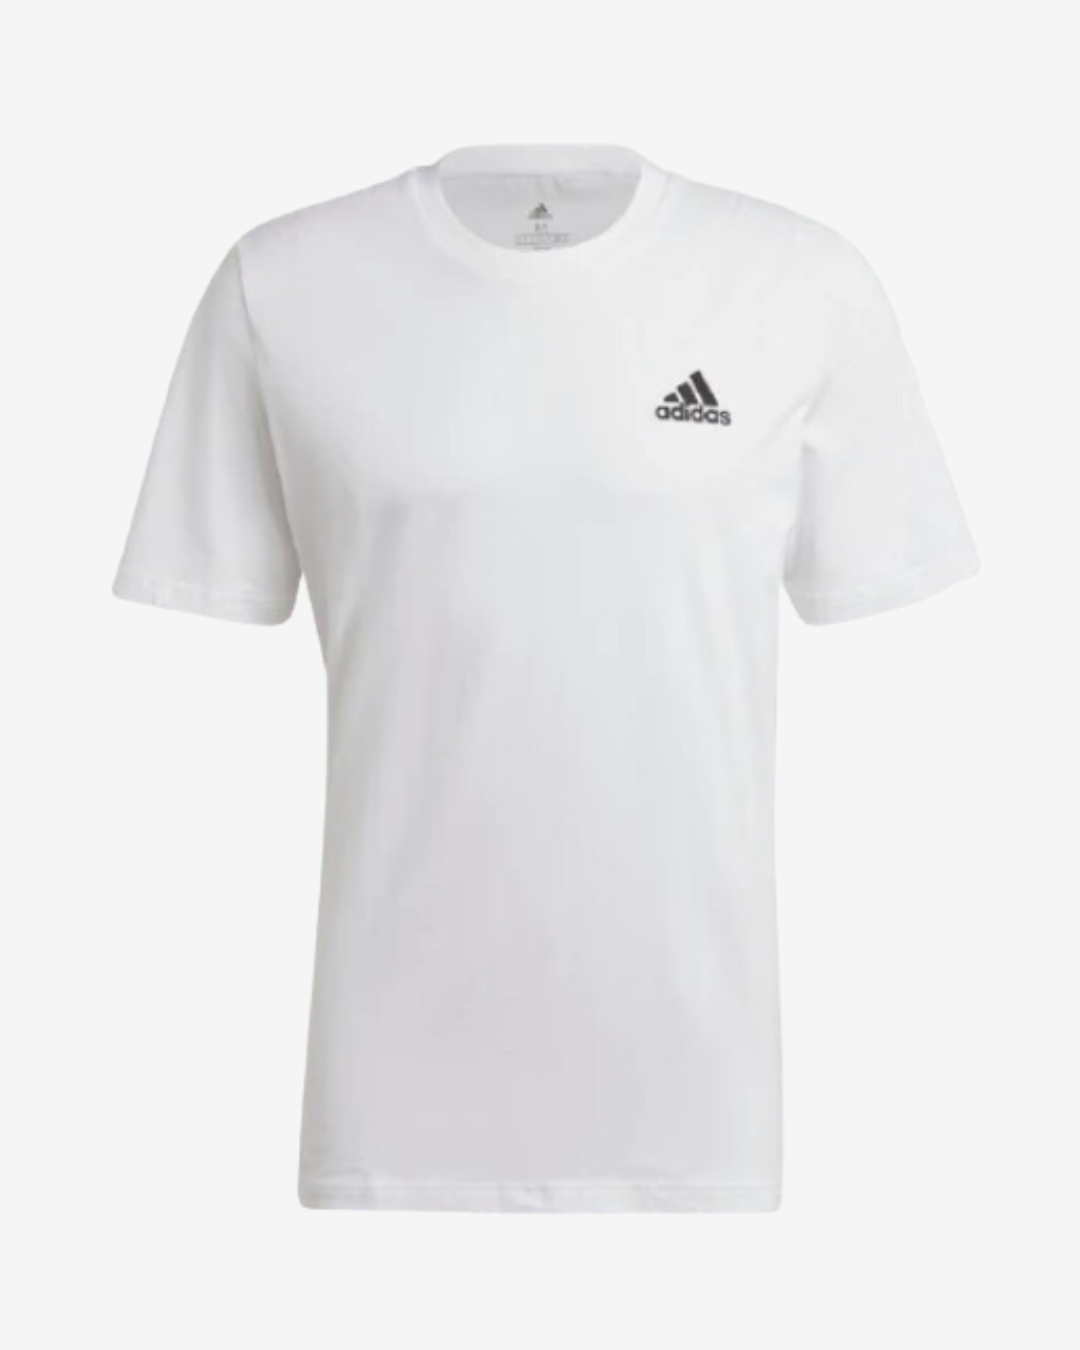 Billede af Adidas Original logo t-shirt - Hvid - Str. S - Modish.dk hos Modish.dk